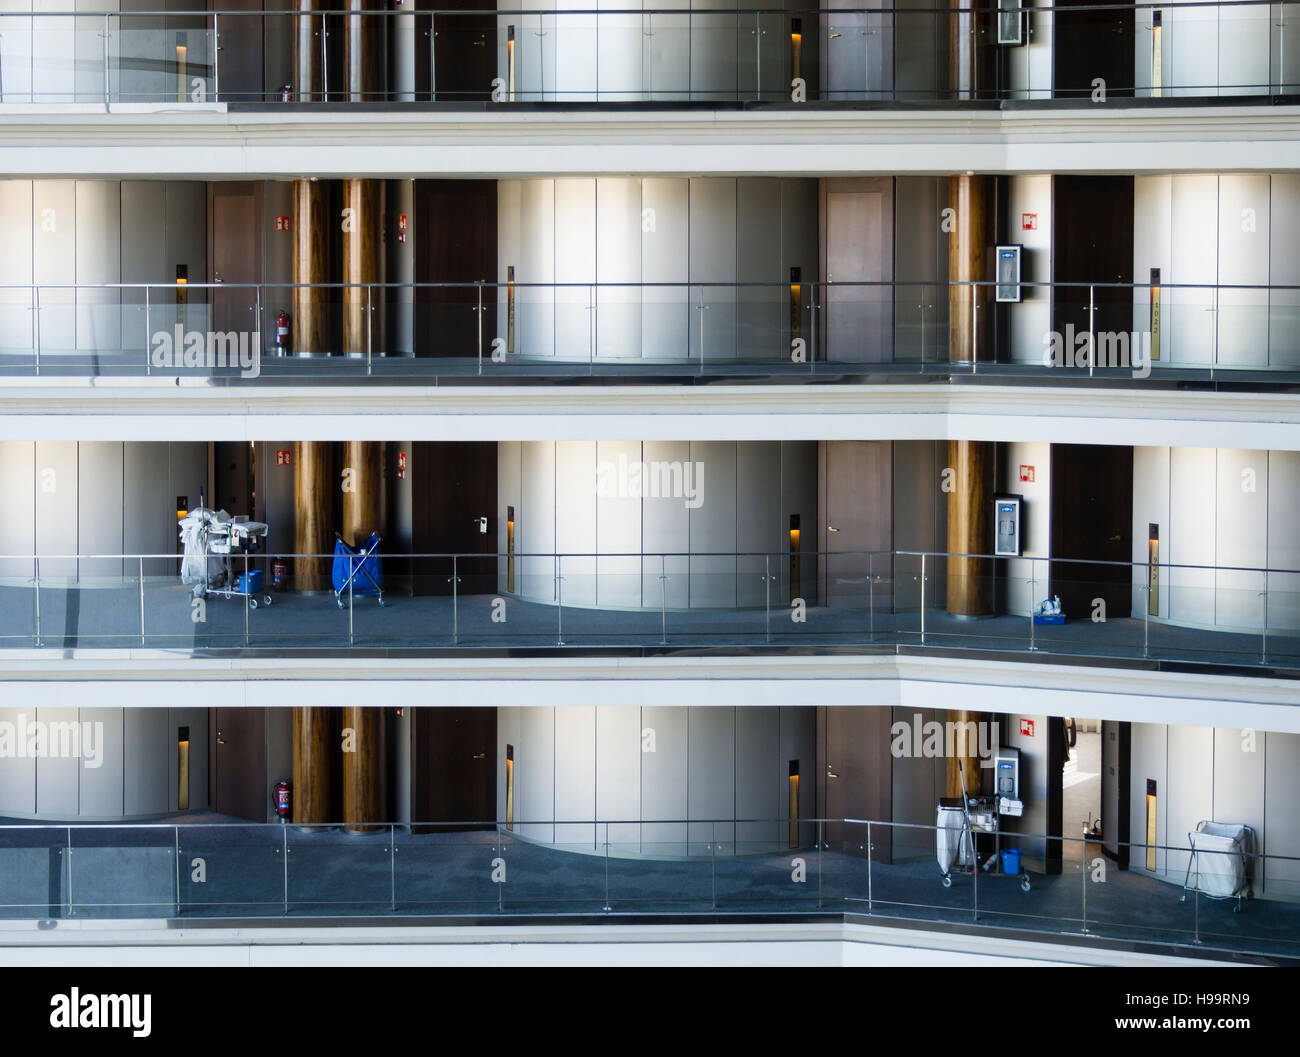 Die Reinigung Kader eines großen Businesshotels reinigt die Etagen und Zimmer. Viele Zimmer auf vielen Ebenen sichtbar. Stockfoto